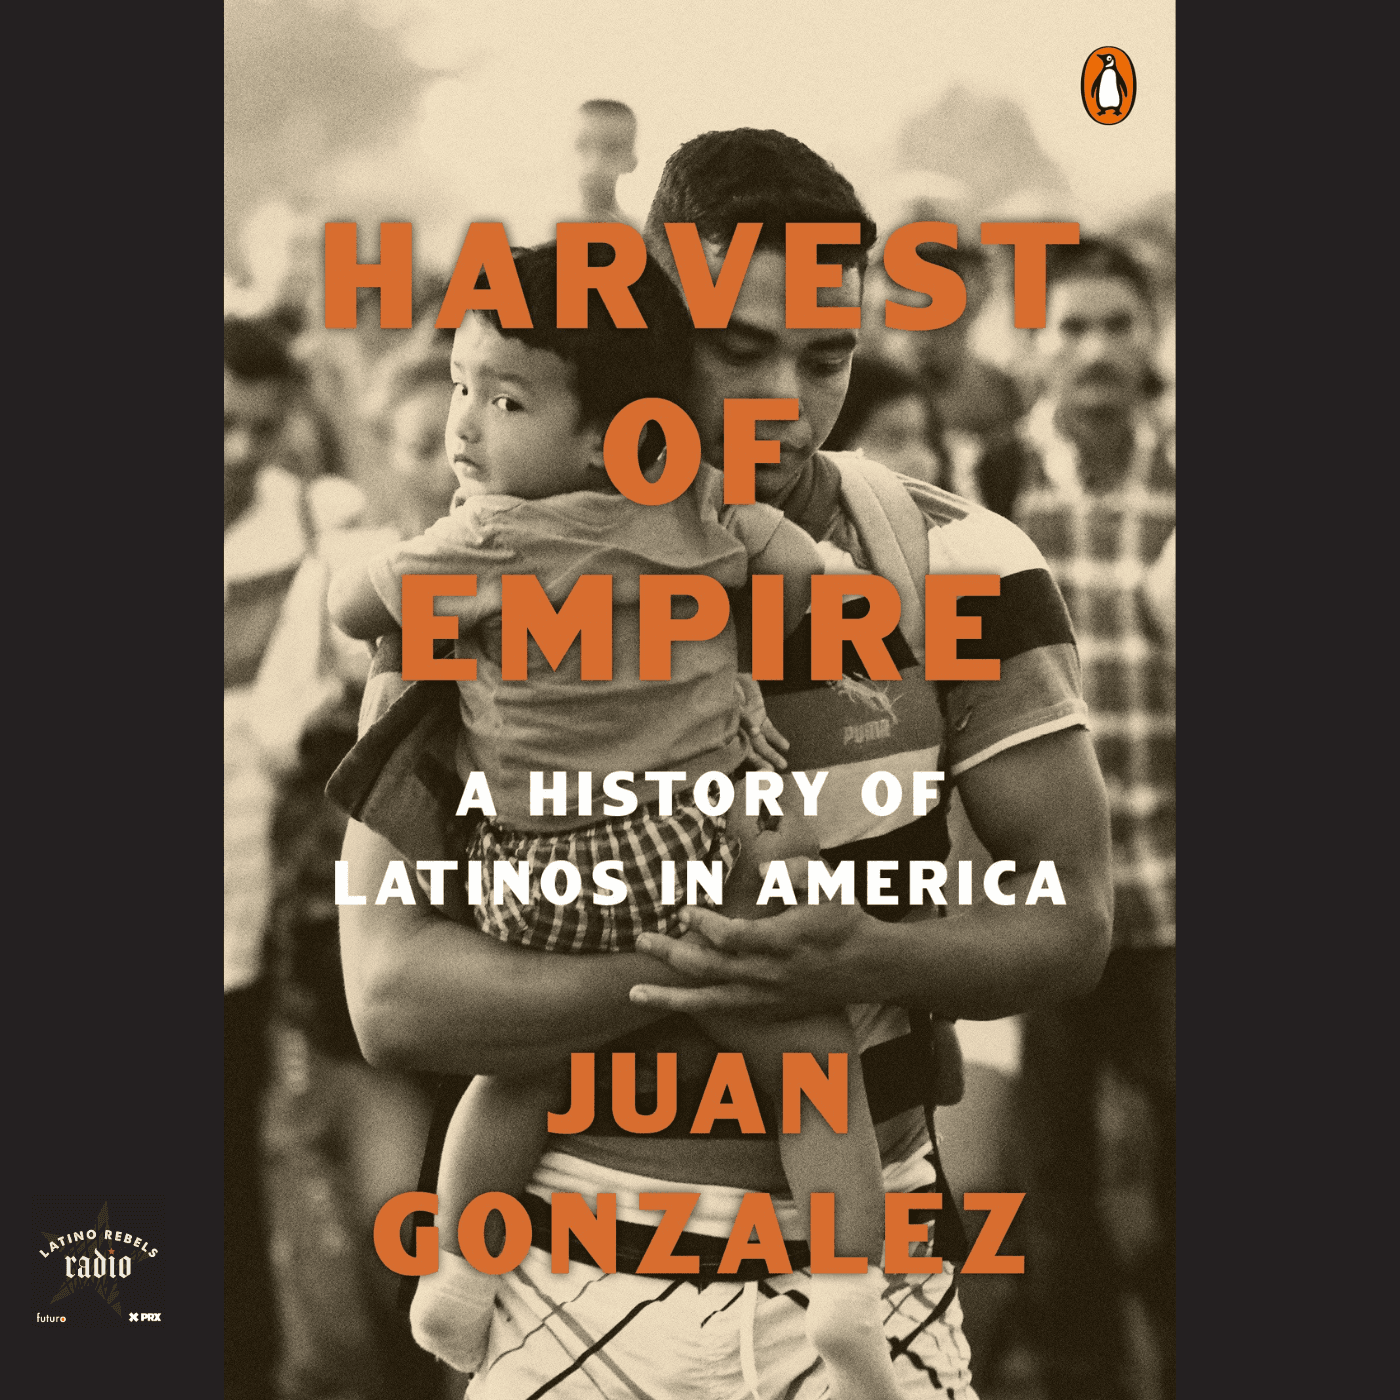 Thumbnail for "From 2022: Juan González's Harvest of Empire".